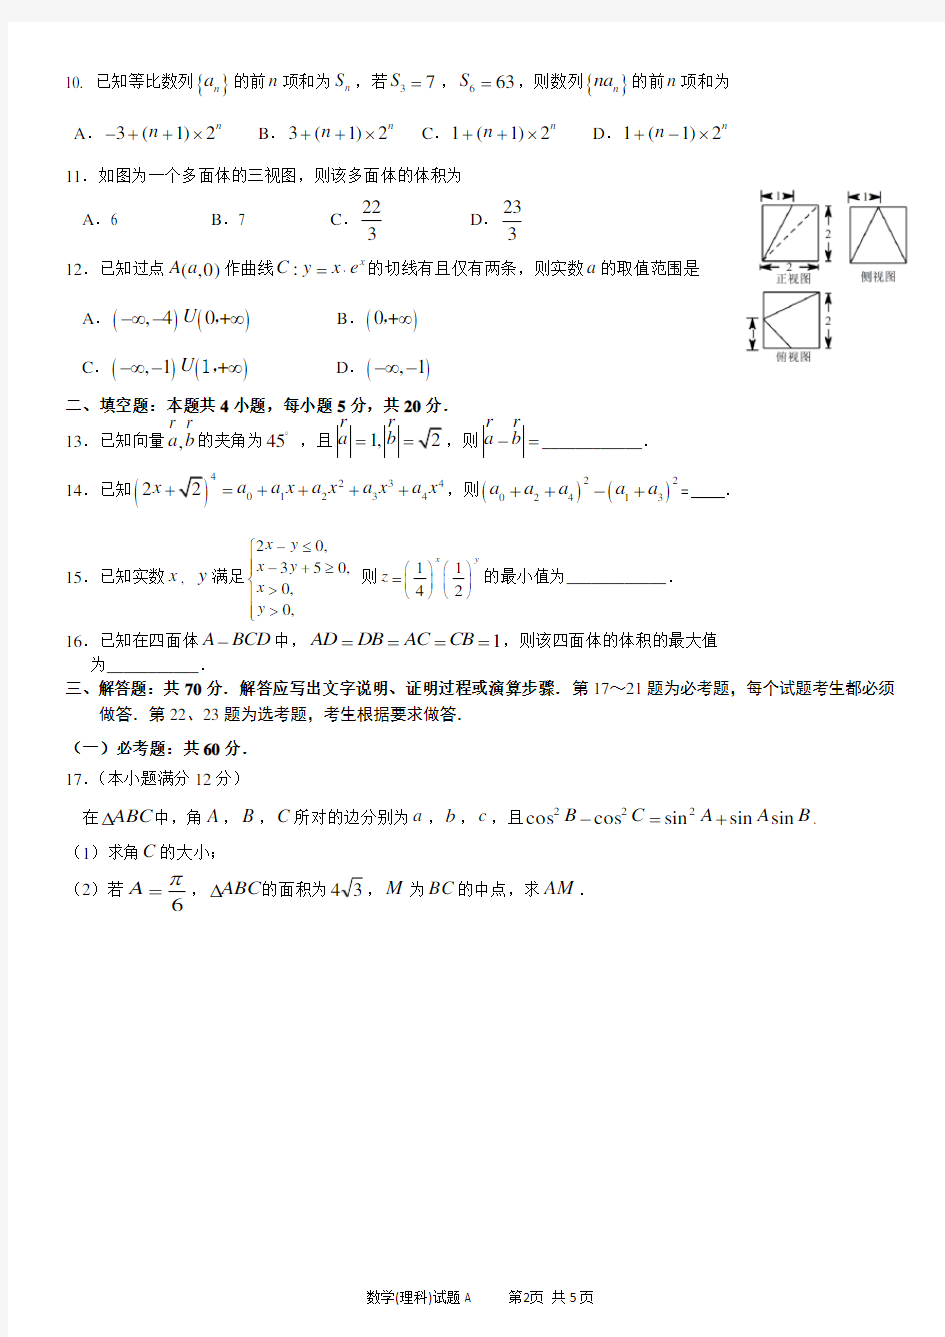 2019届广州市高三年级调研测试(理科数学)试题